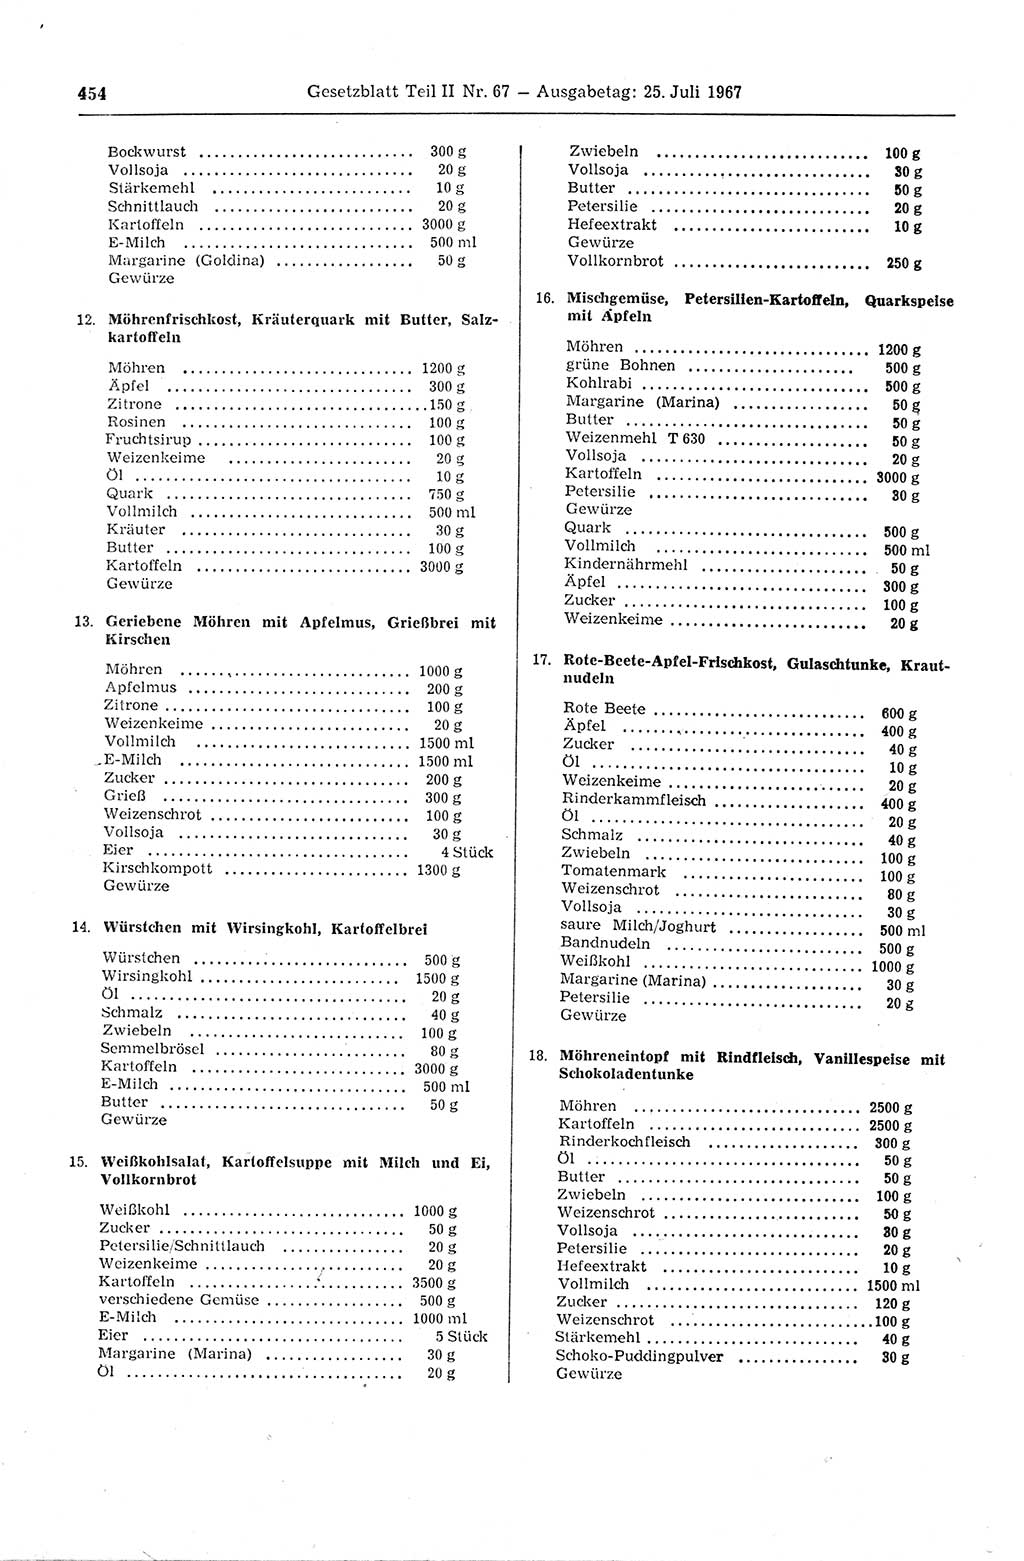 Gesetzblatt (GBl.) der Deutschen Demokratischen Republik (DDR) Teil ⅠⅠ 1967, Seite 454 (GBl. DDR ⅠⅠ 1967, S. 454)